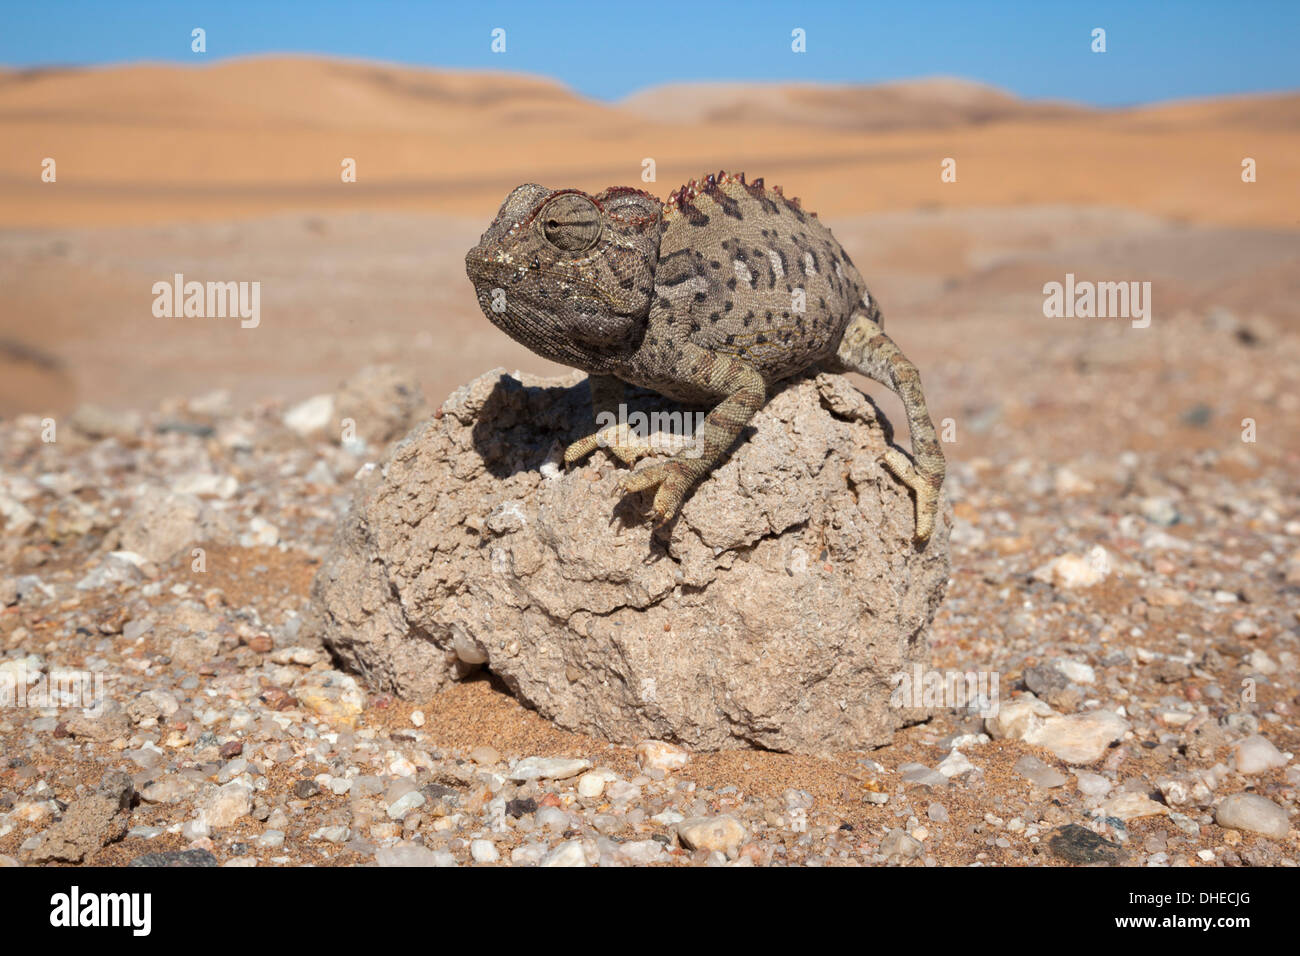 Namaqua chameleon (Chamaeleo namaquensis), Namib Desert, Namibia, Africa Stock Photo